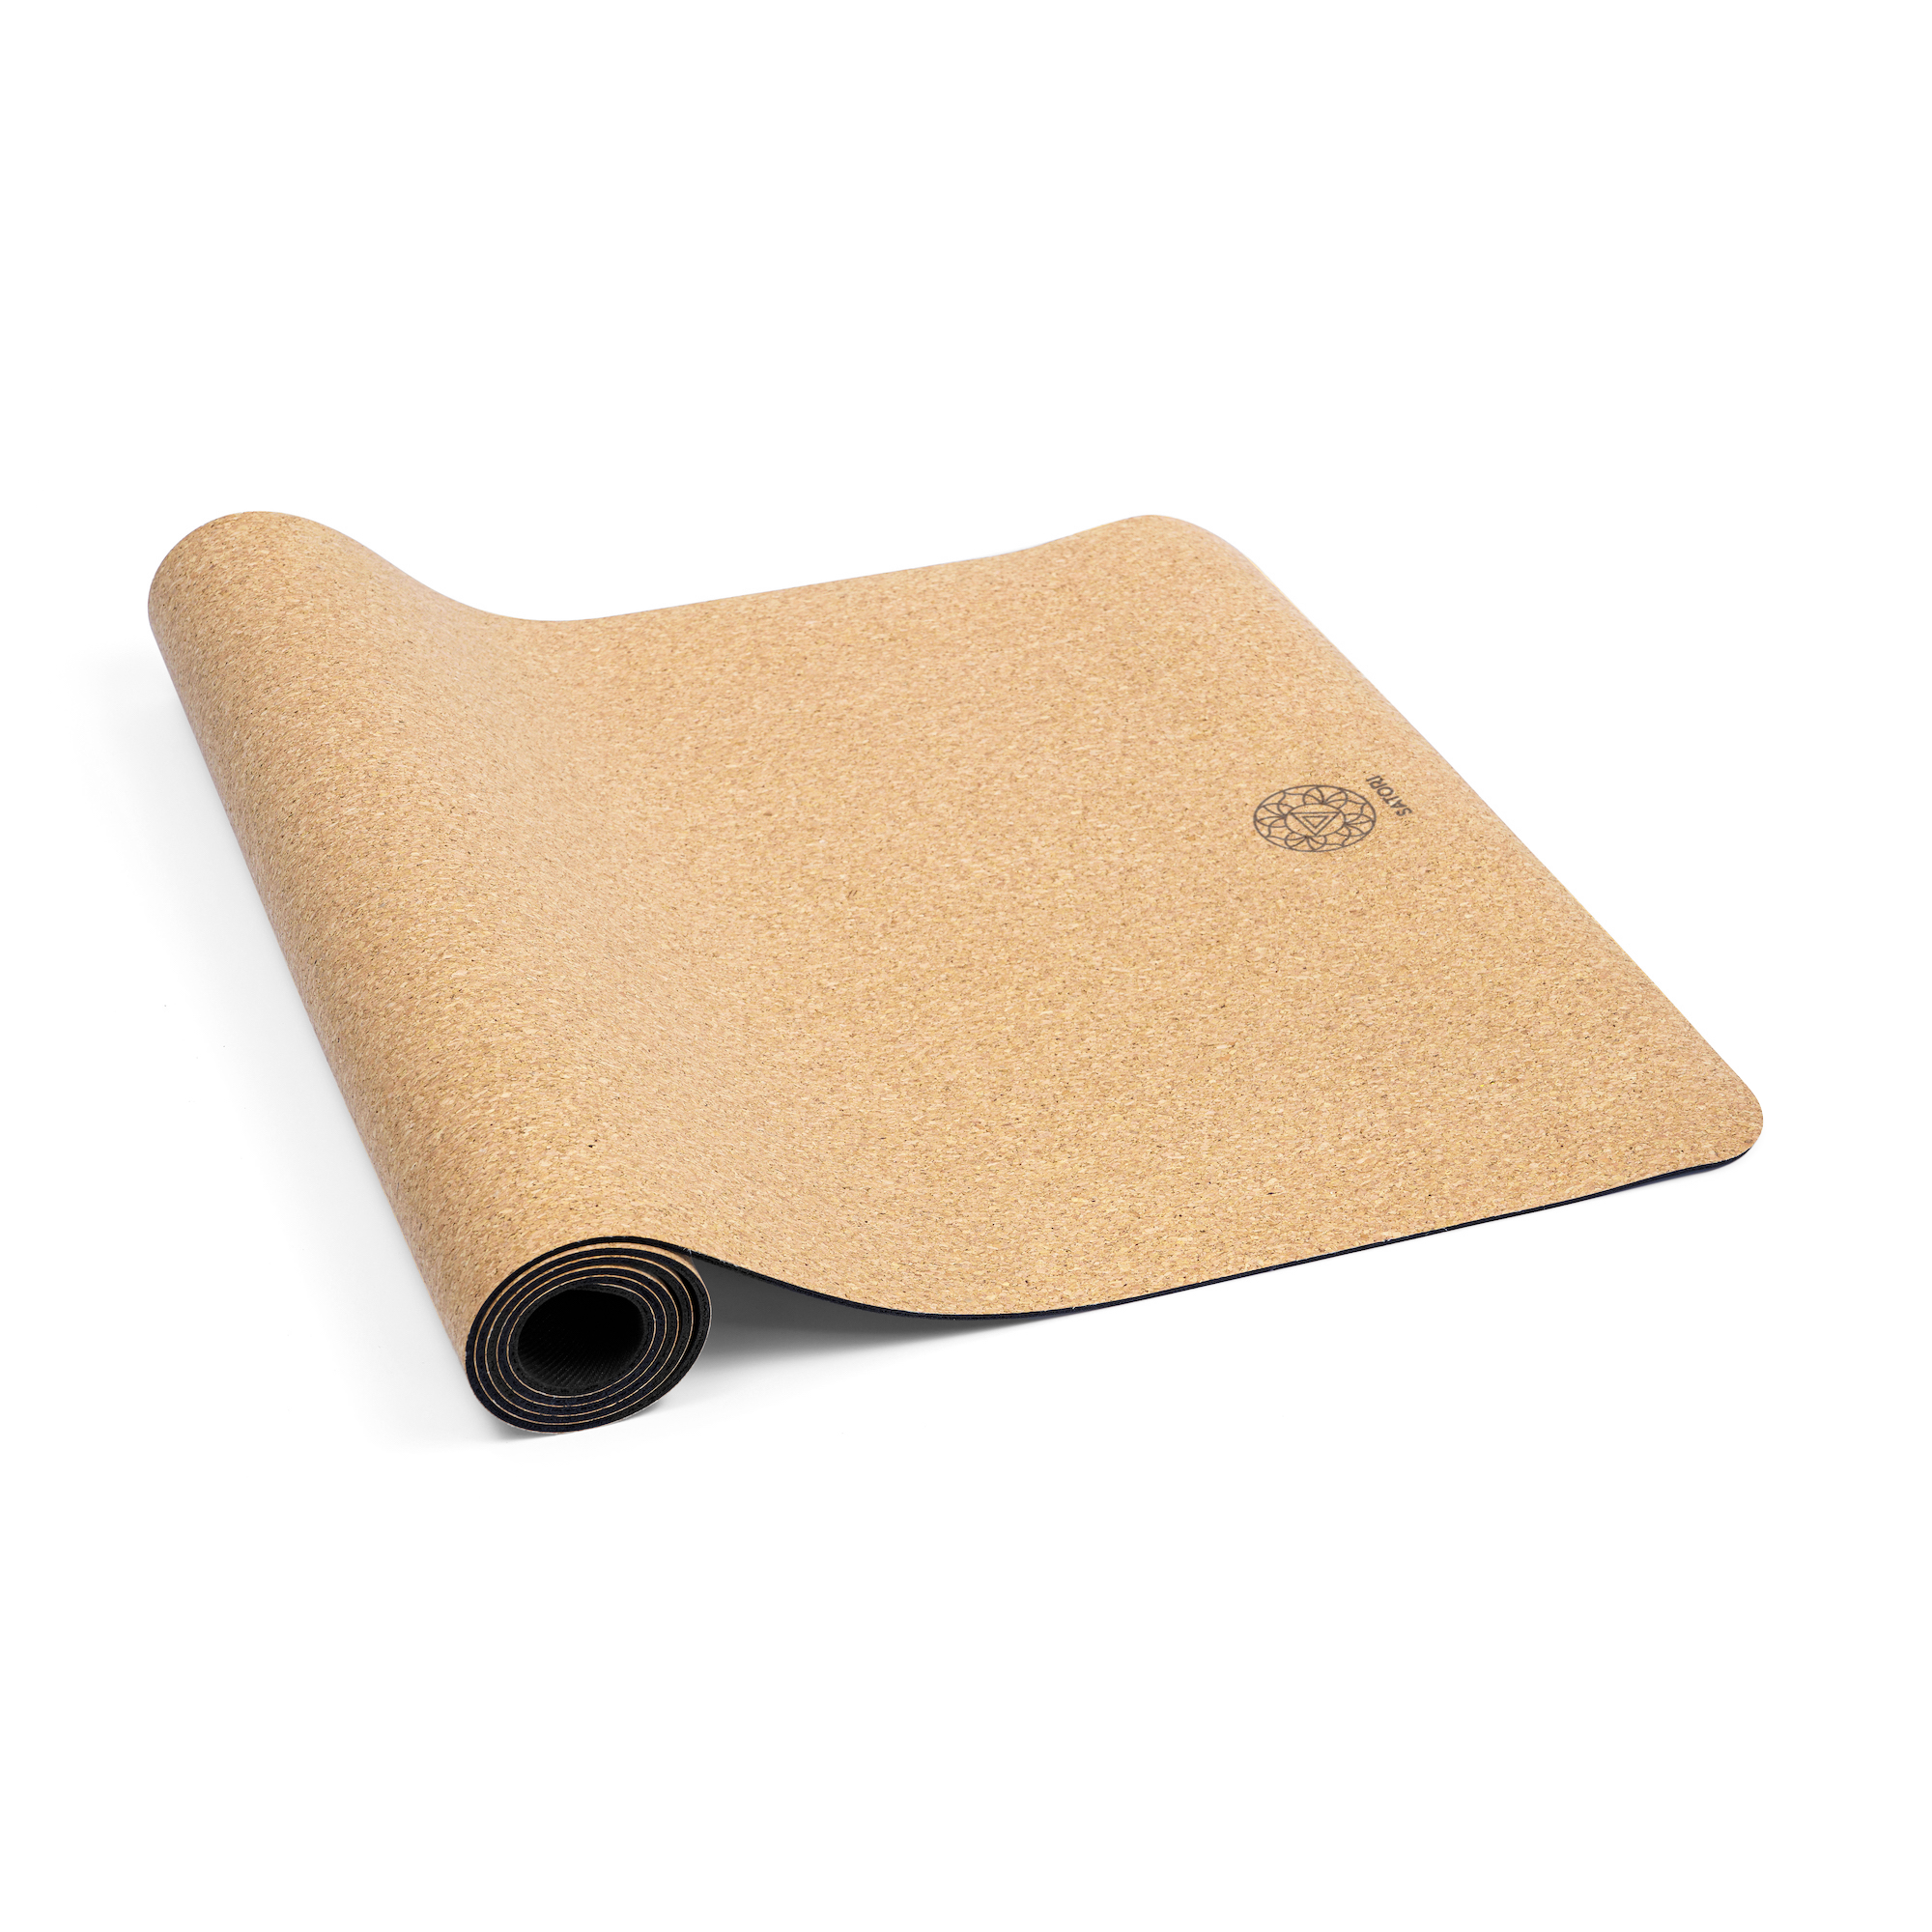 SatoriConcept Eco Cork Yoga Mat, 4mm, 72x24, Non Slip, Hot Yoga